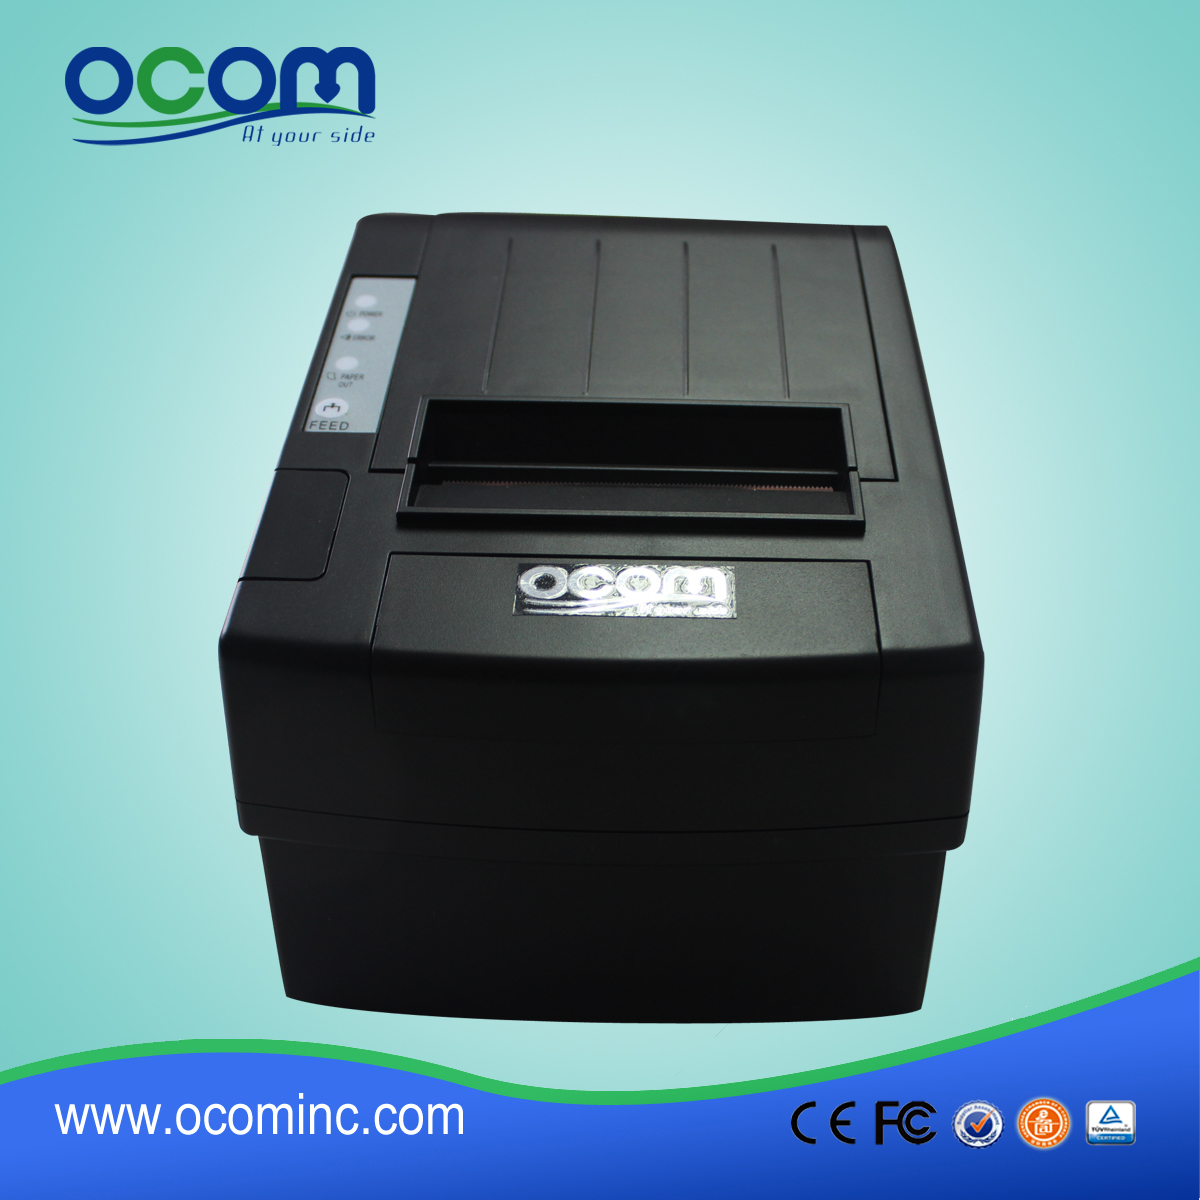 (OCPP-806)中国80mm 热接收打印机制造商